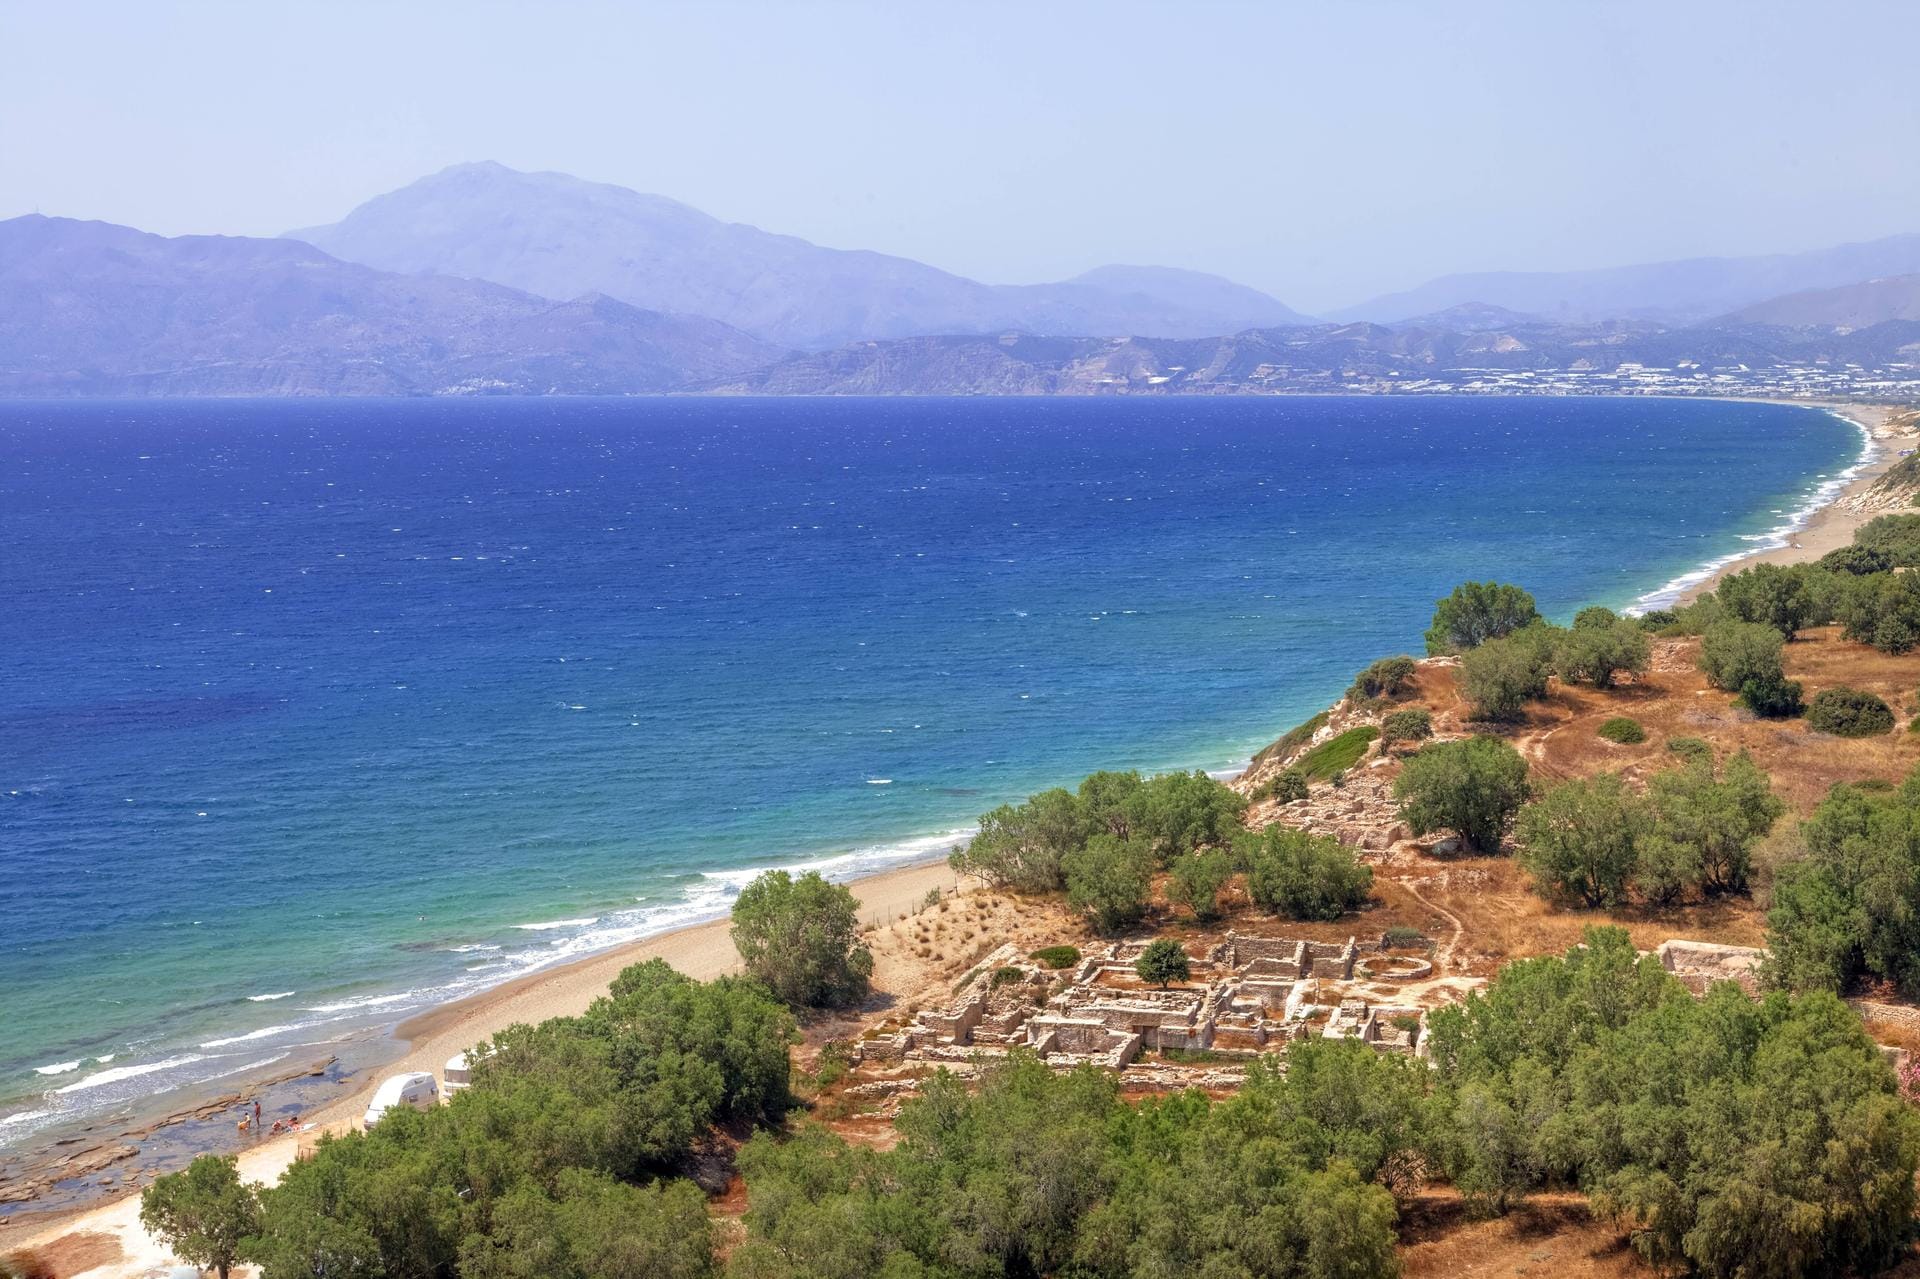 Strand von Kreta: Kultur, Strand, Berge – die griechische Insel Kreta erfüllt verschiedene Urlaubswünsche.